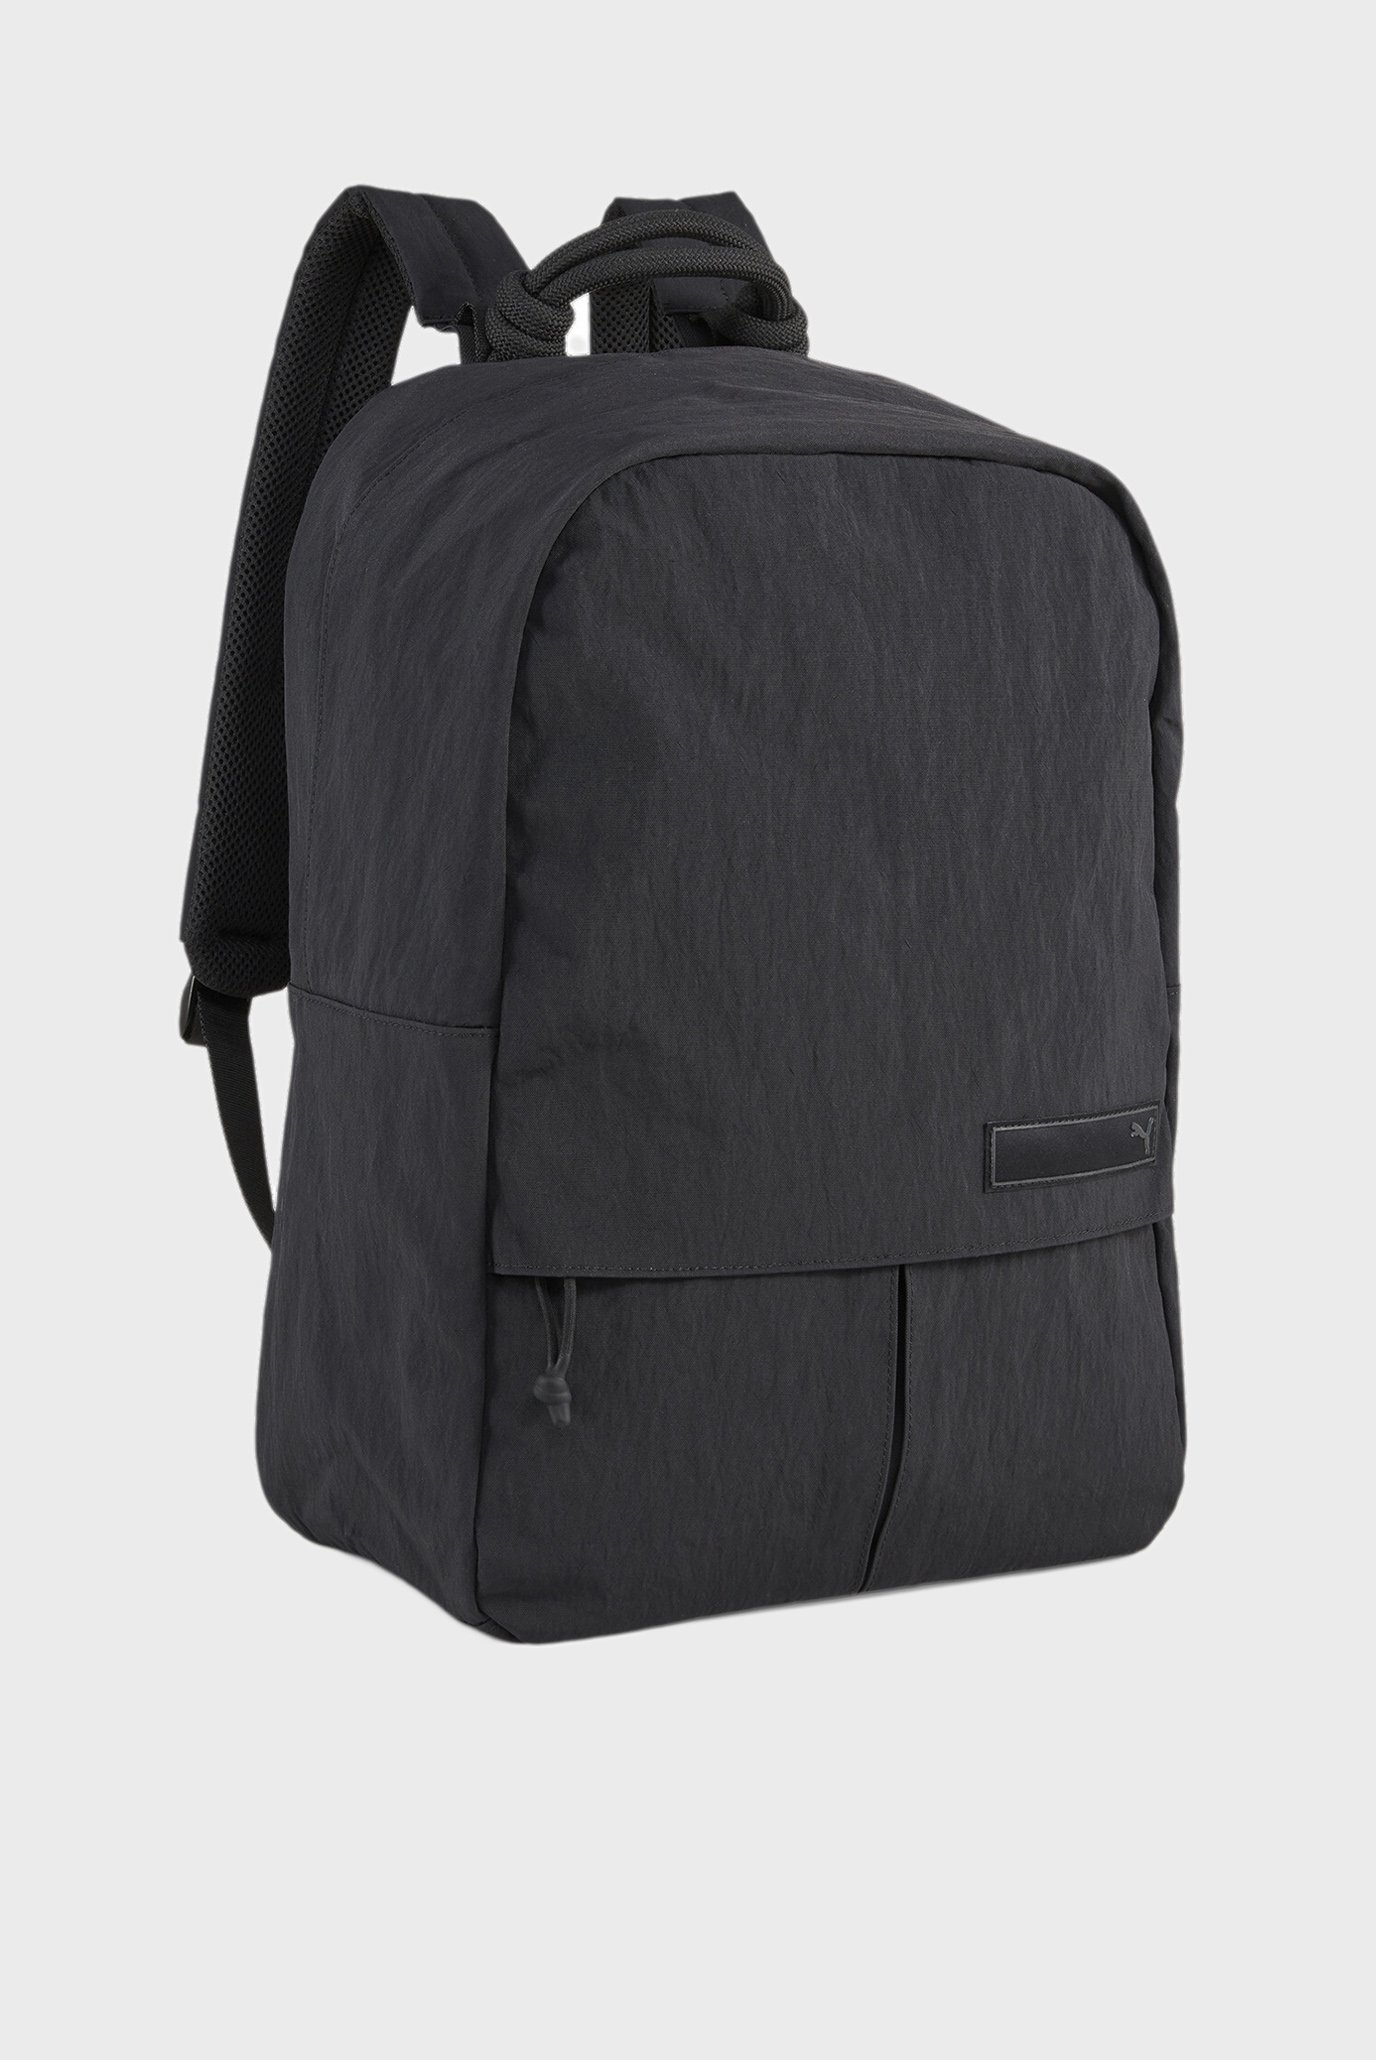 Черный рюкзак PUMA.BL Backpack 1